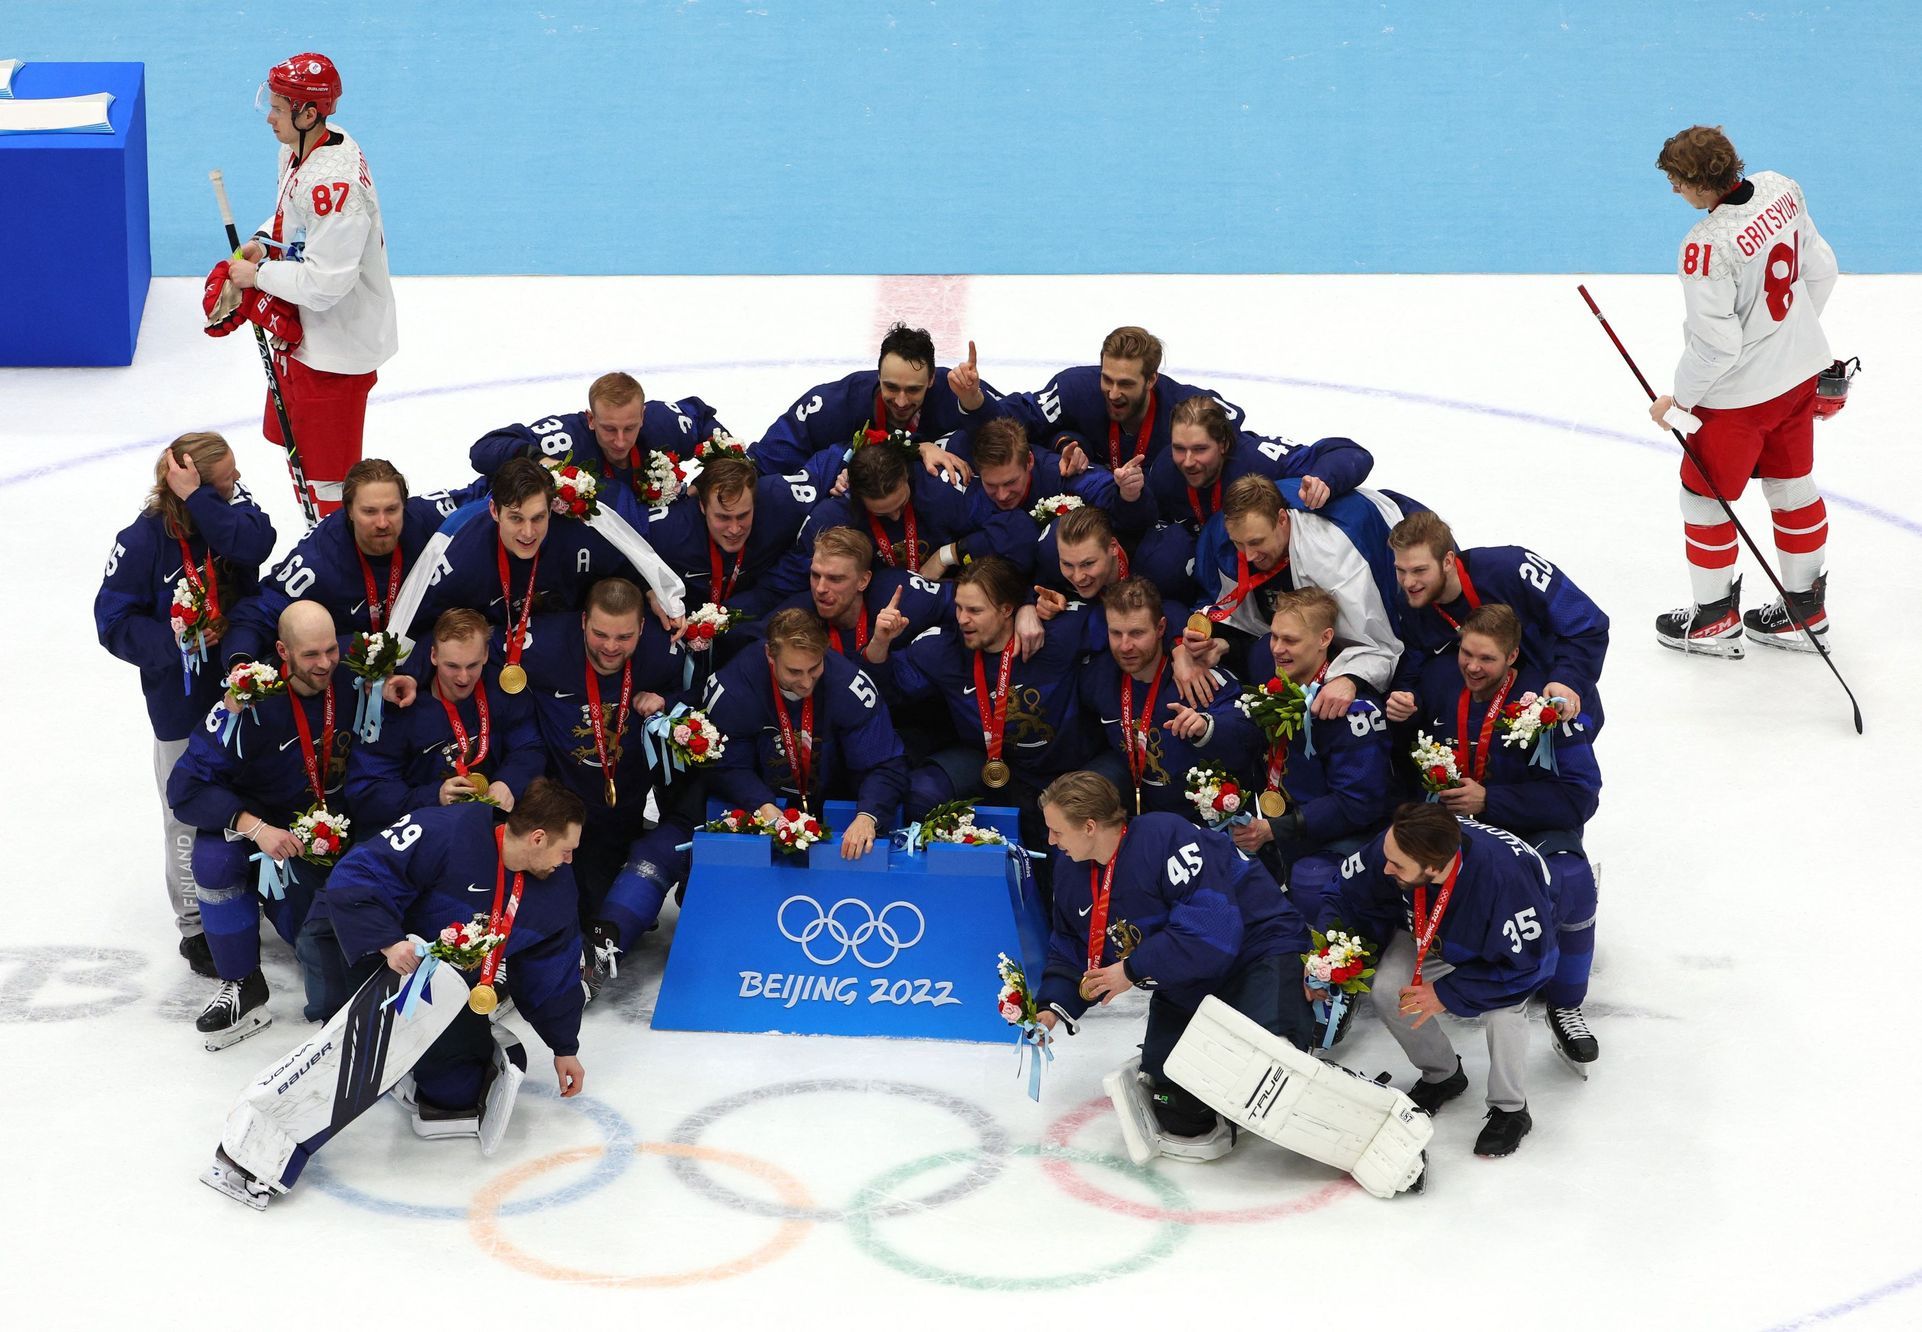 Finnland wird Finalist gegen Russland und feiert das historische Gold des Eishockeyturniers